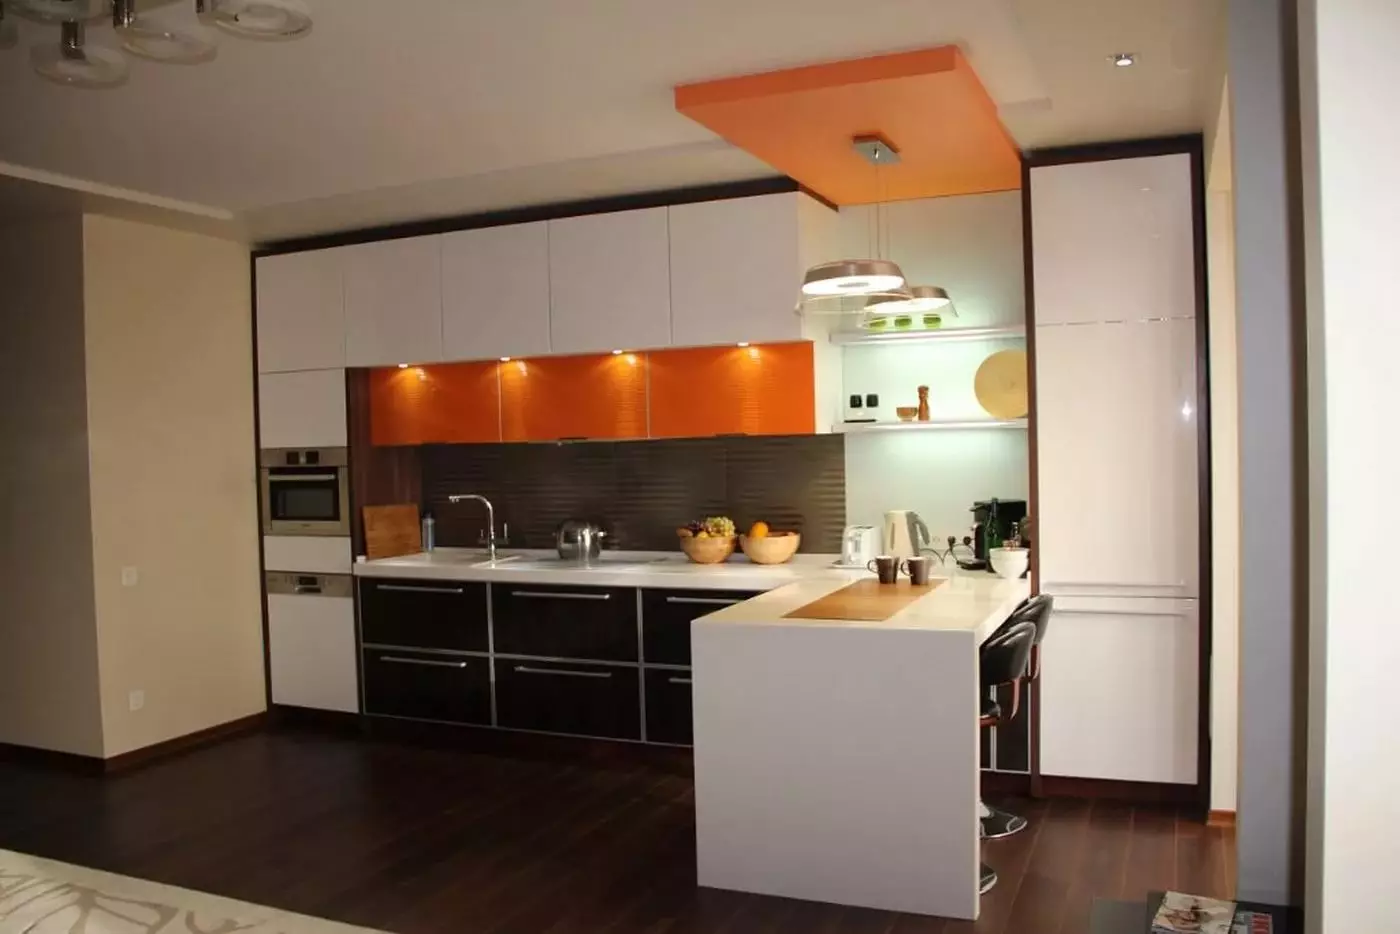 Ενσωματωμένη κουζίνα για μικρές κουζίνες (54 φωτογραφίες): Χαρακτηριστικά ενσωματωμένων κουζινών με ενσωματωμένο εξοπλισμό, επιλογές σχεδιασμού 9549_32